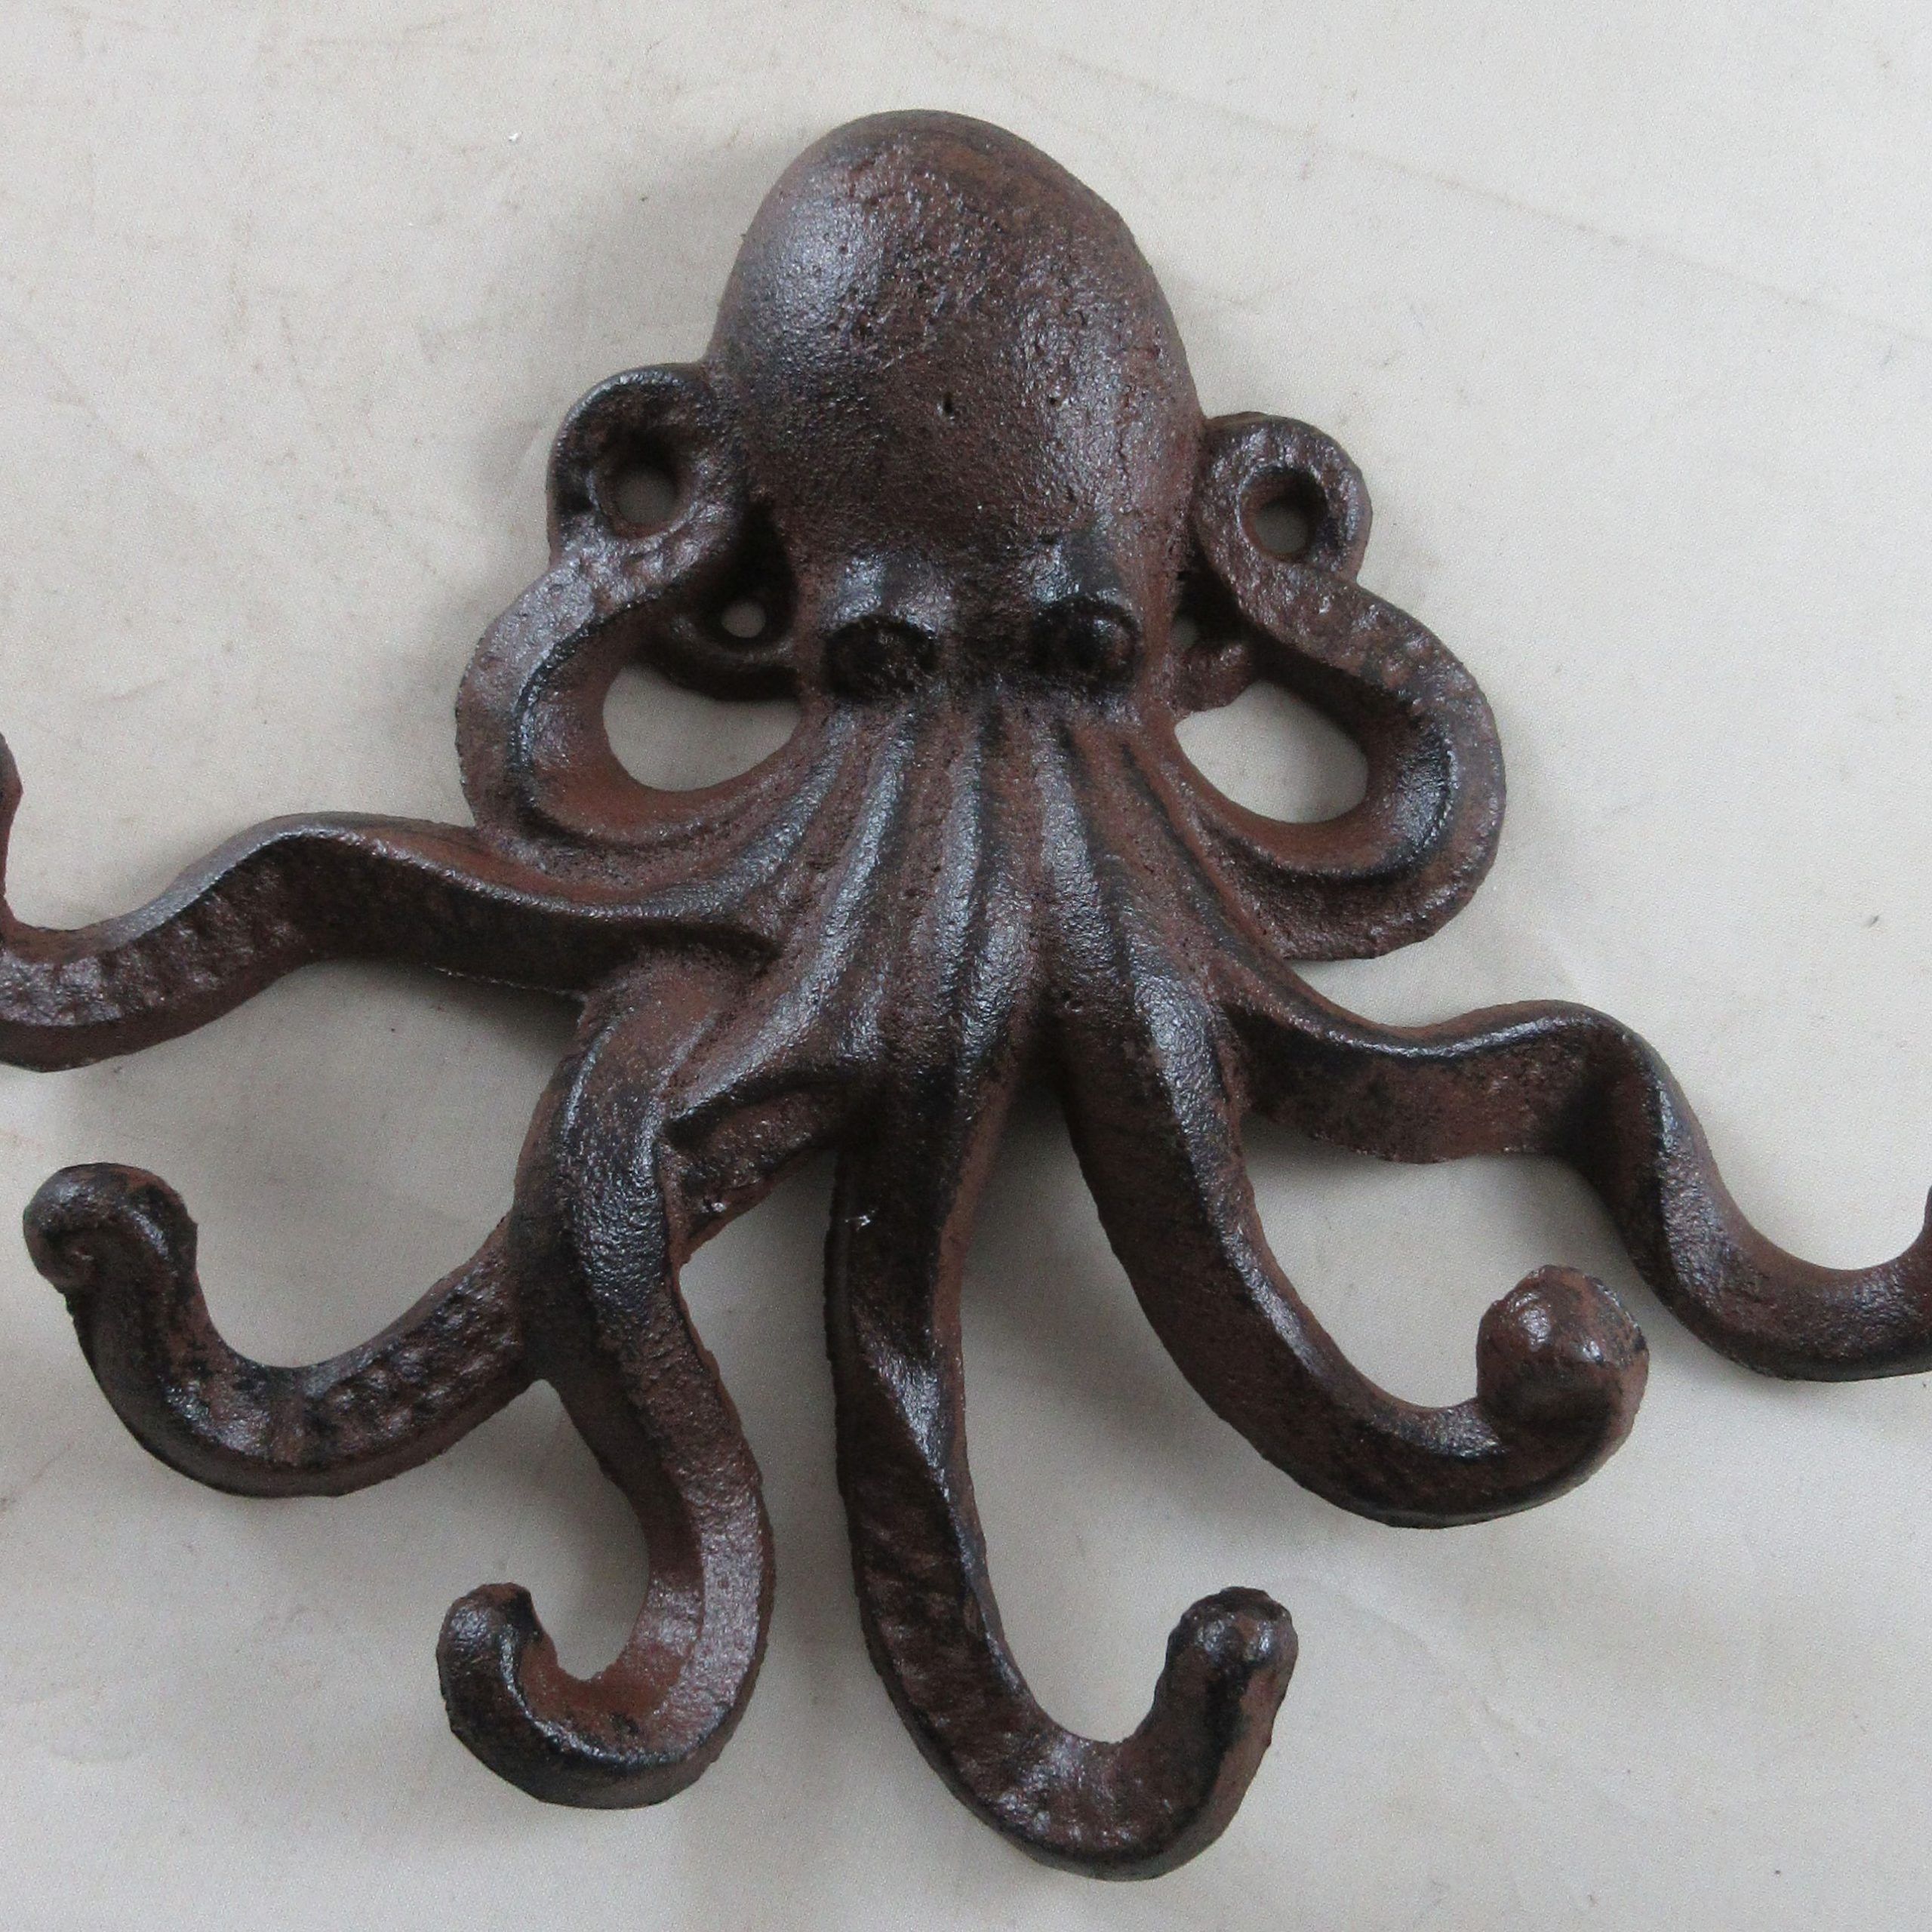 Nautical Cast Iron Octopus Wall Decor – Walmart – Walmart Inside Most Current Octopus Metal Wall Sculptures (View 1 of 20)